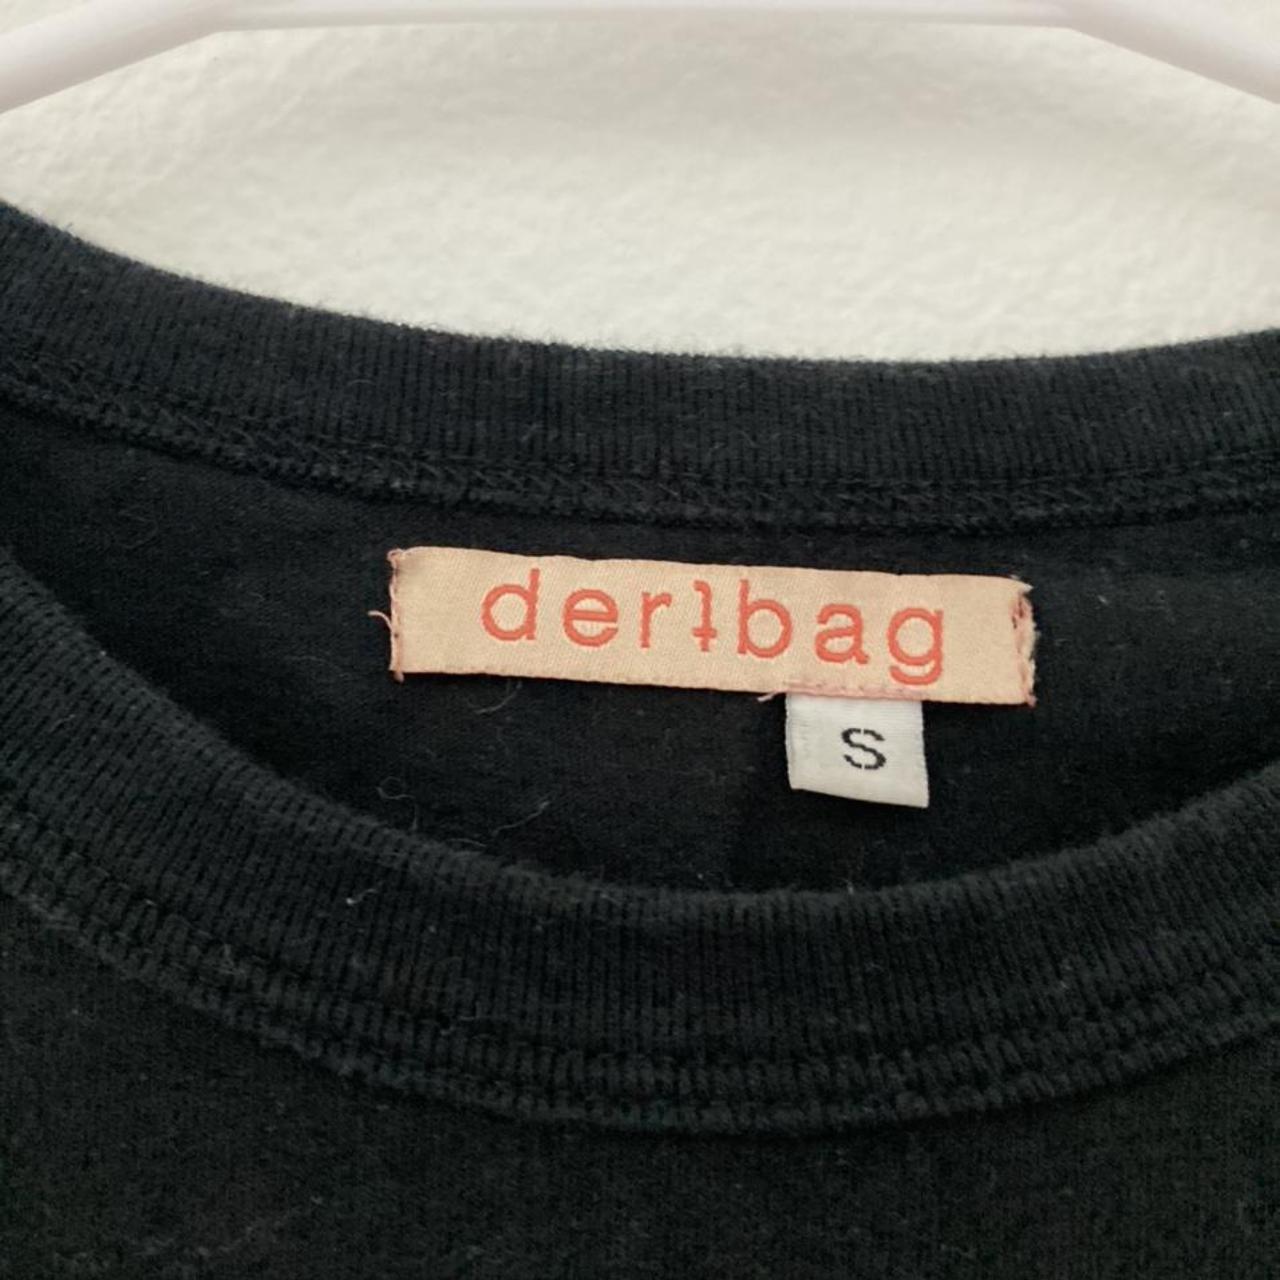 Product Image 2 - Dertbag red logo on black